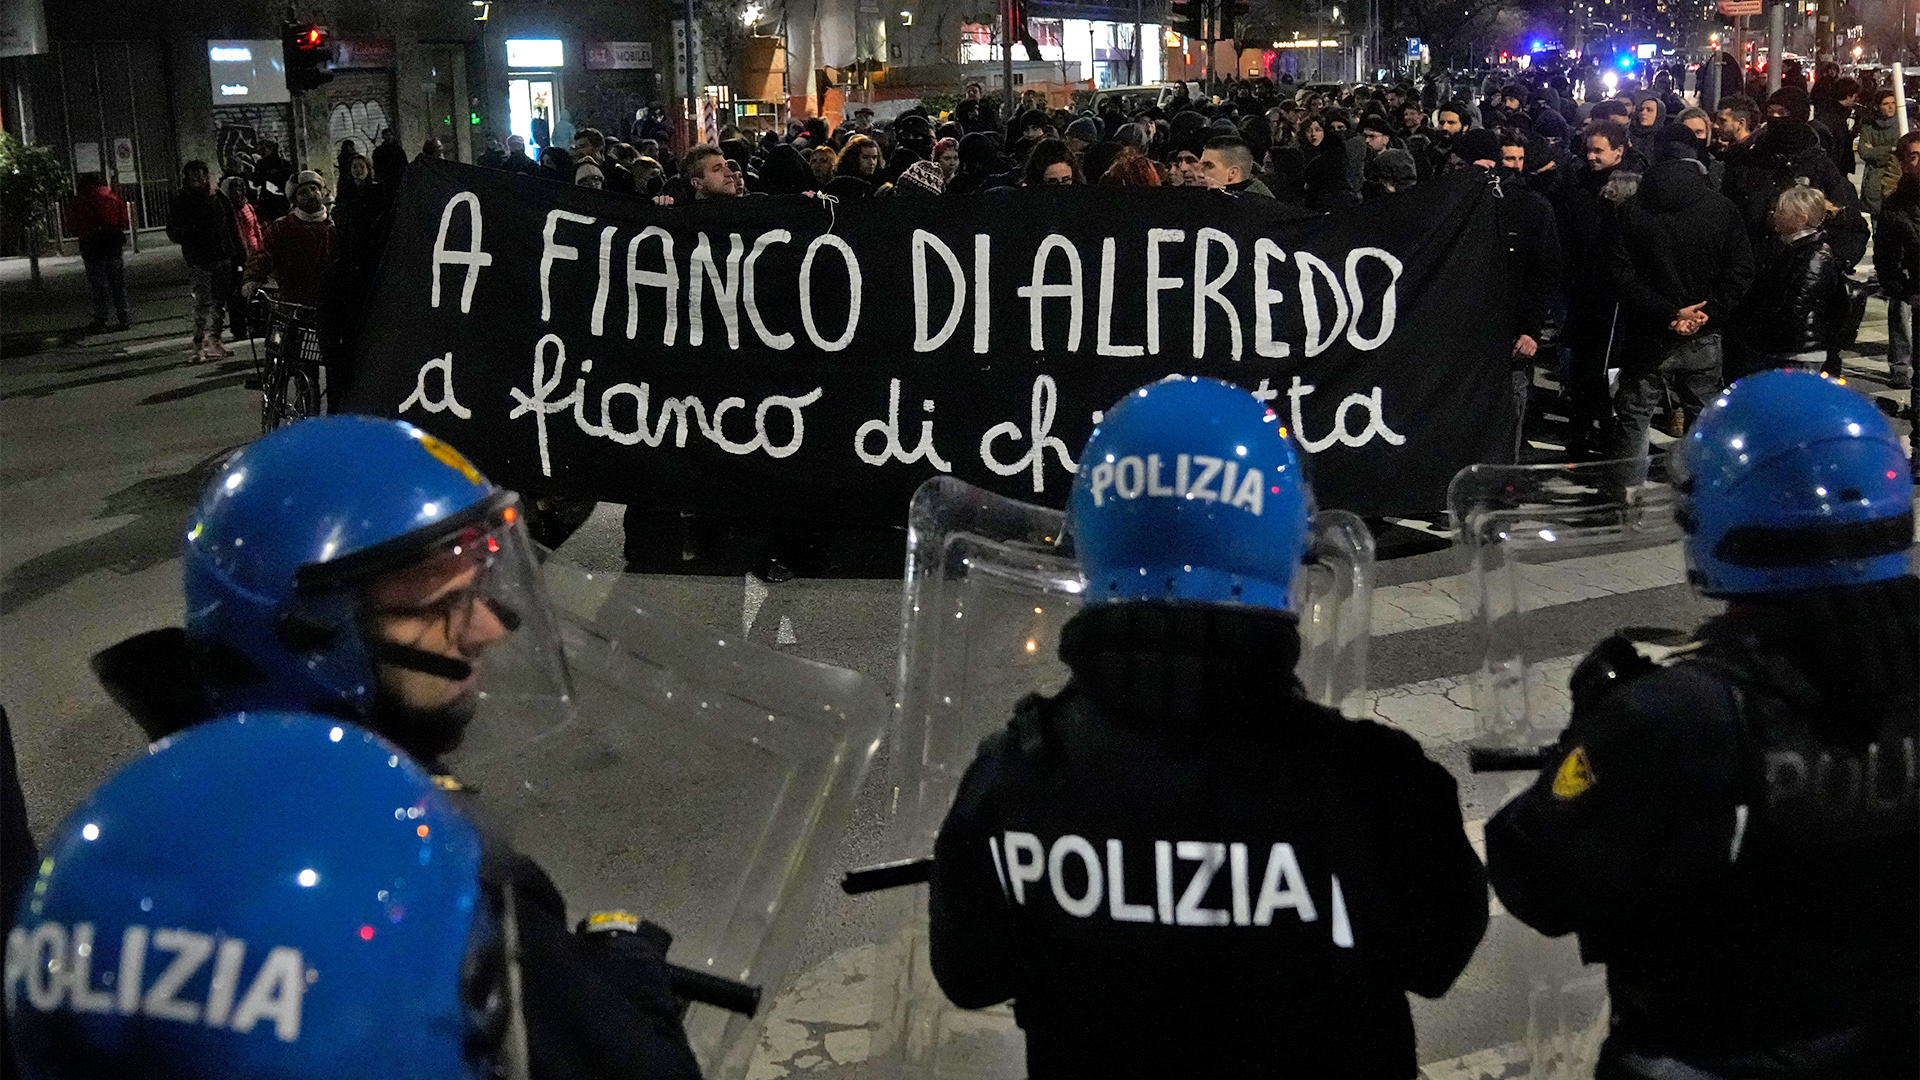 Italienische Isolationshaft: Wie ein Anarchist Meloni unter Druck setzt